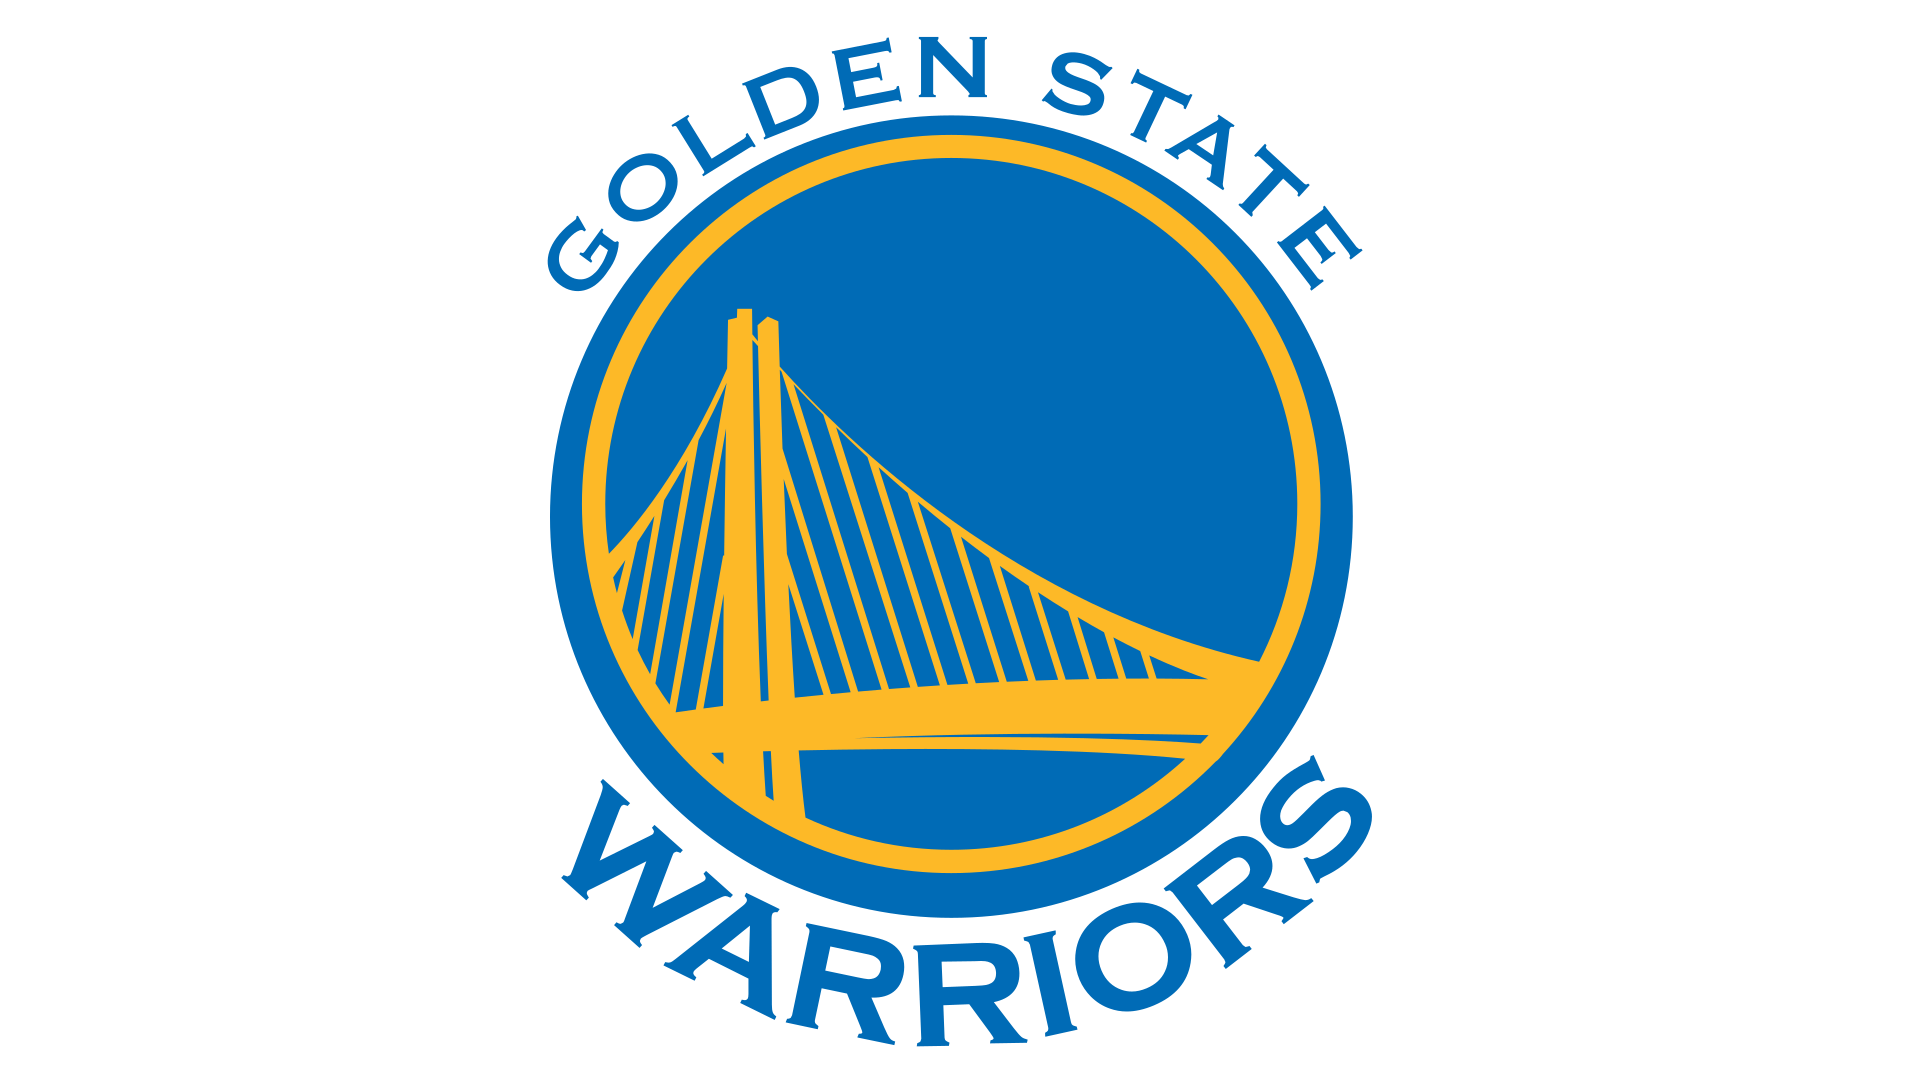 Warriors Basketball Logo - Golden State Warriors Logo, Golden State Warriors Symbol, Meaning